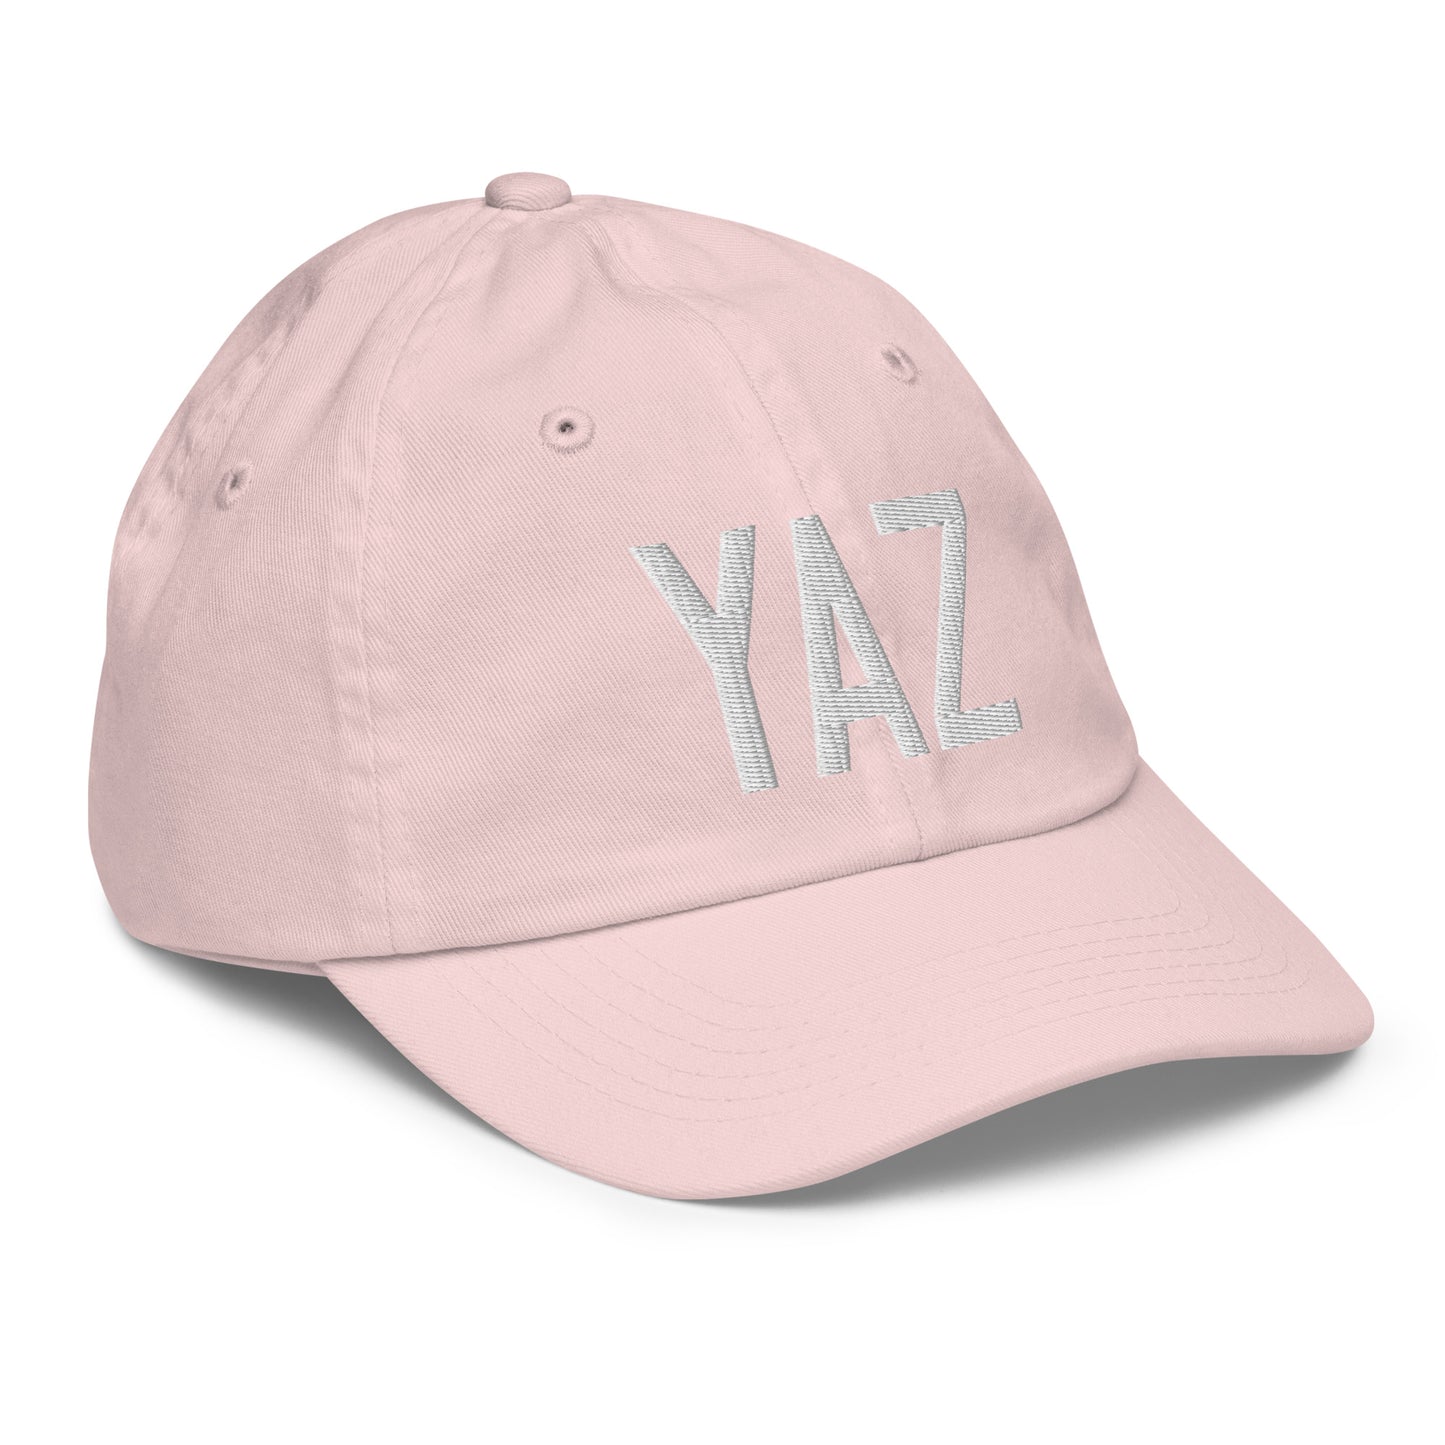 Airport Code Kid's Baseball Cap - White • YAZ Tofino • YHM Designs - Image 32